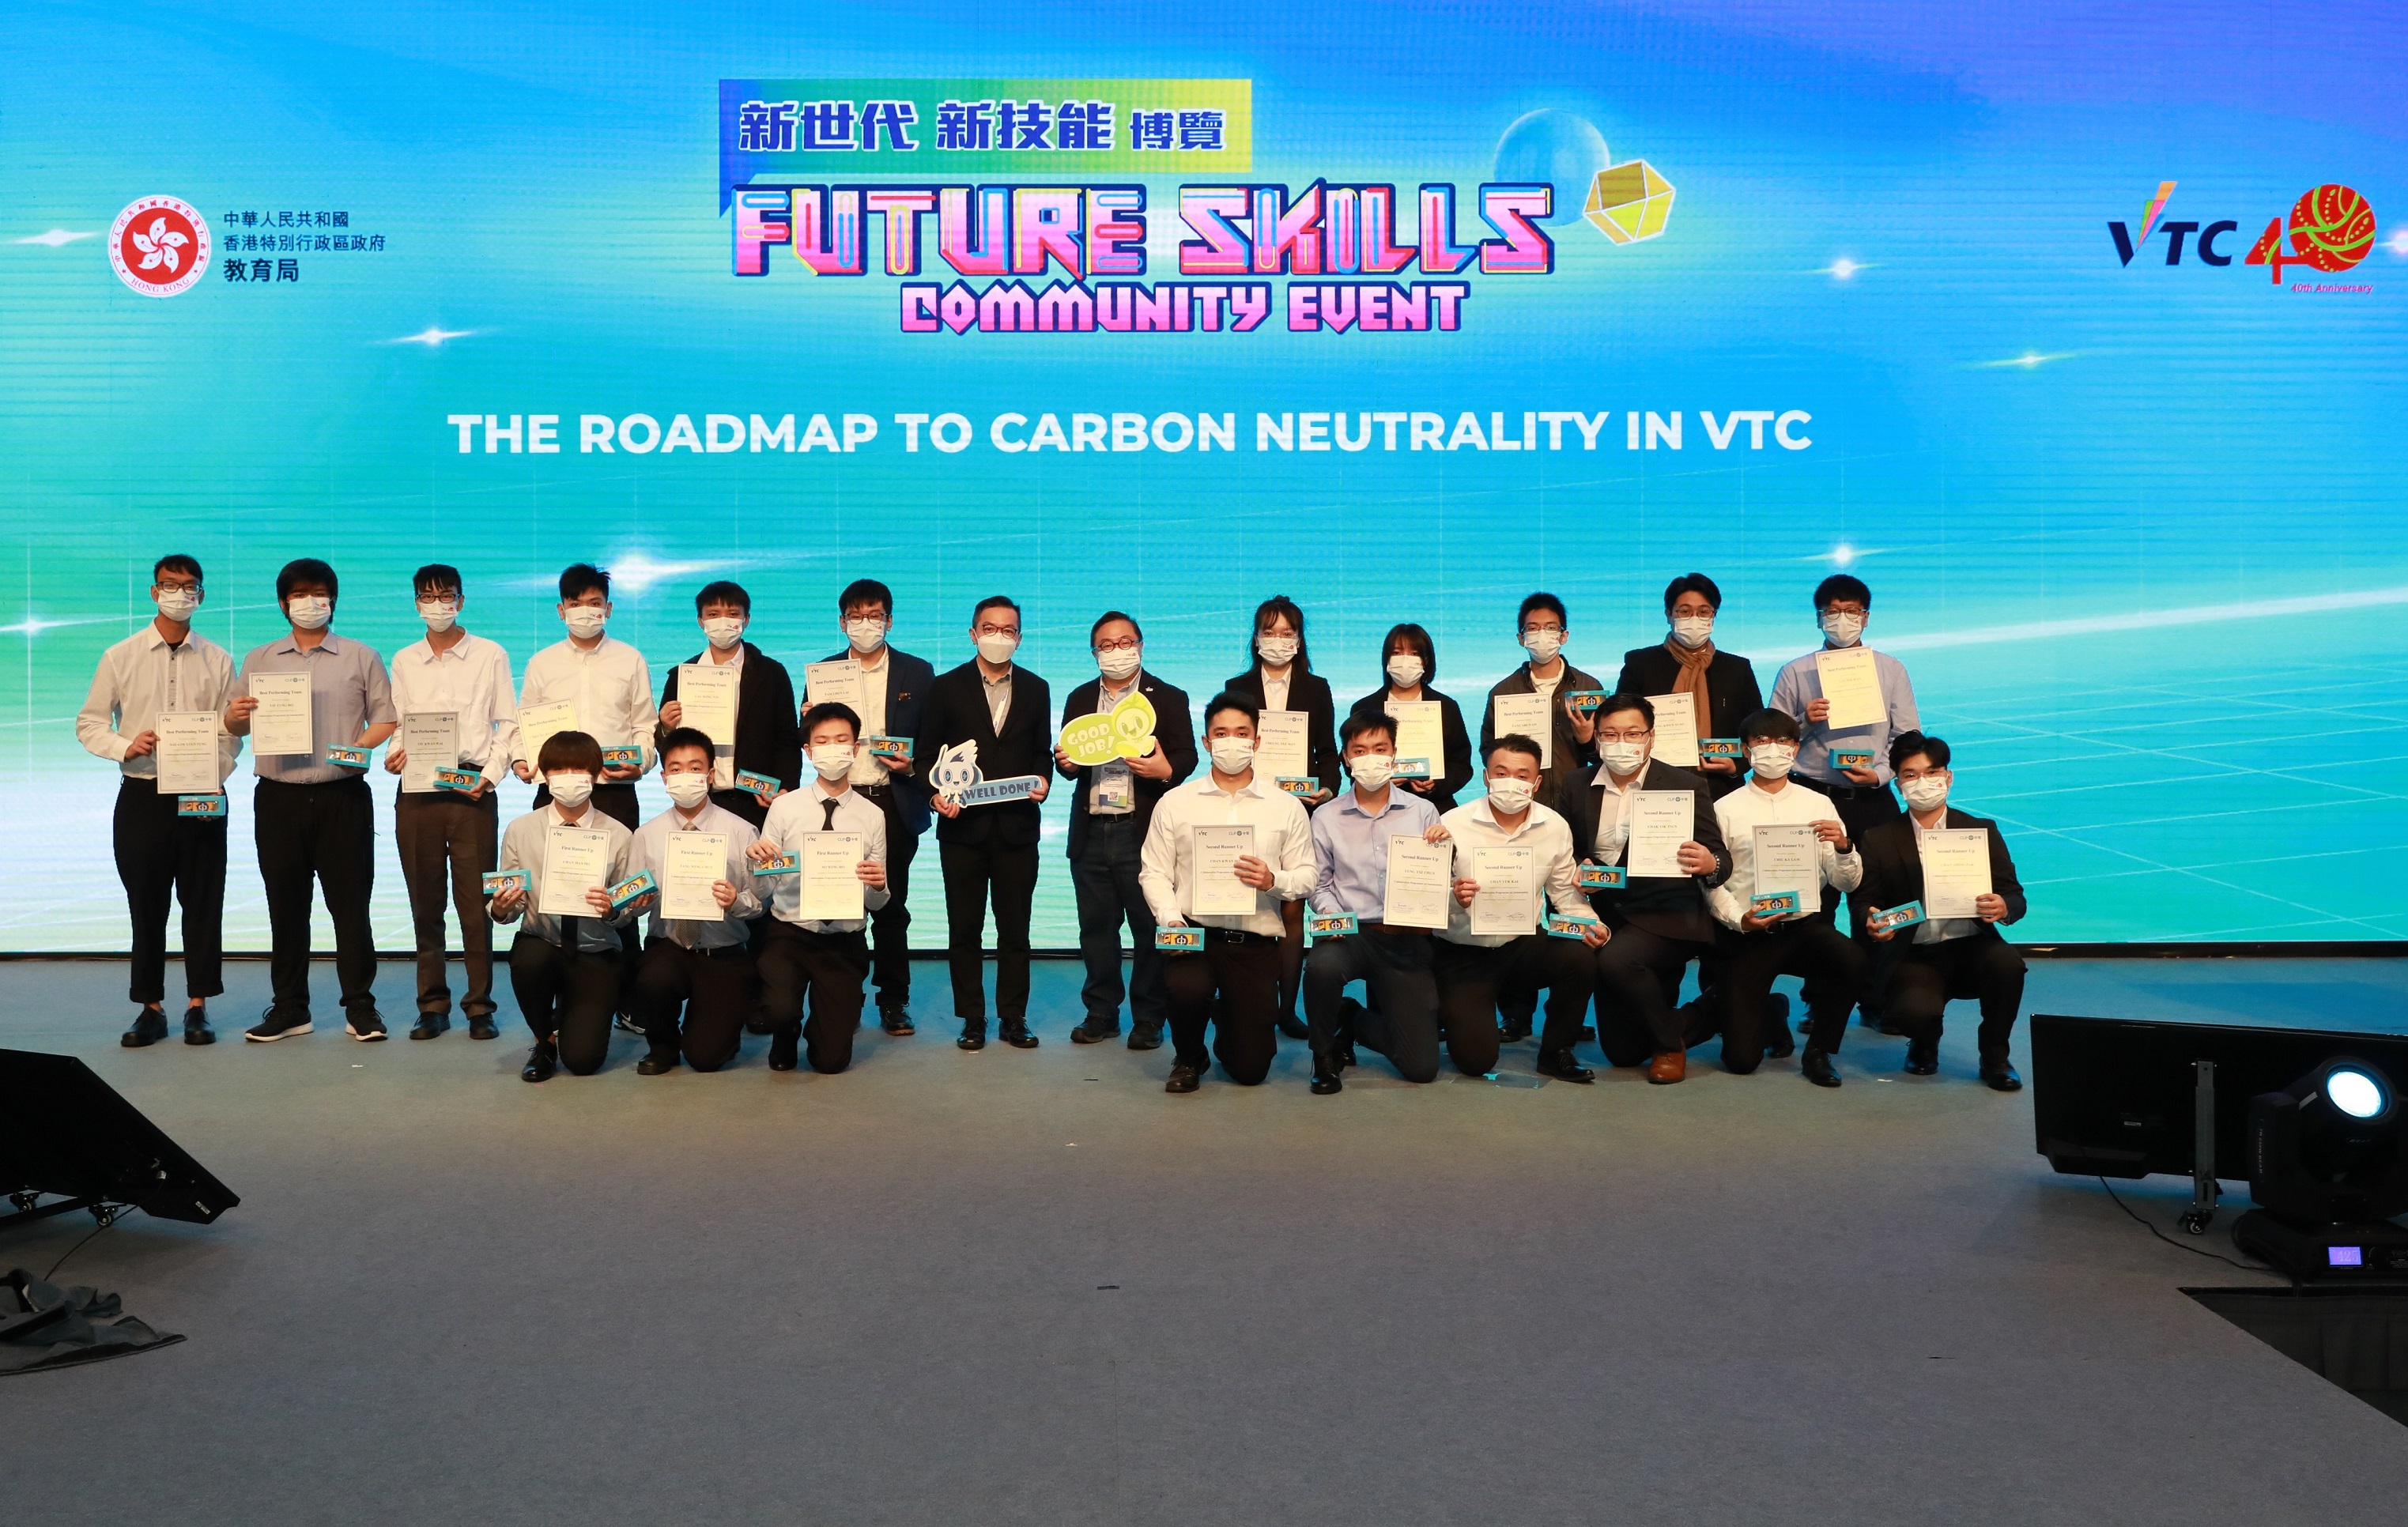 VTC與中華電力早前合作，由中華電力工程師為VTC學生提供能源審核培訓，並走訪VTC轄下院校進行能源審核，VTC學生完成能源審核後會撰寫節能改善建議，當中表現優秀的學生獲嘉許